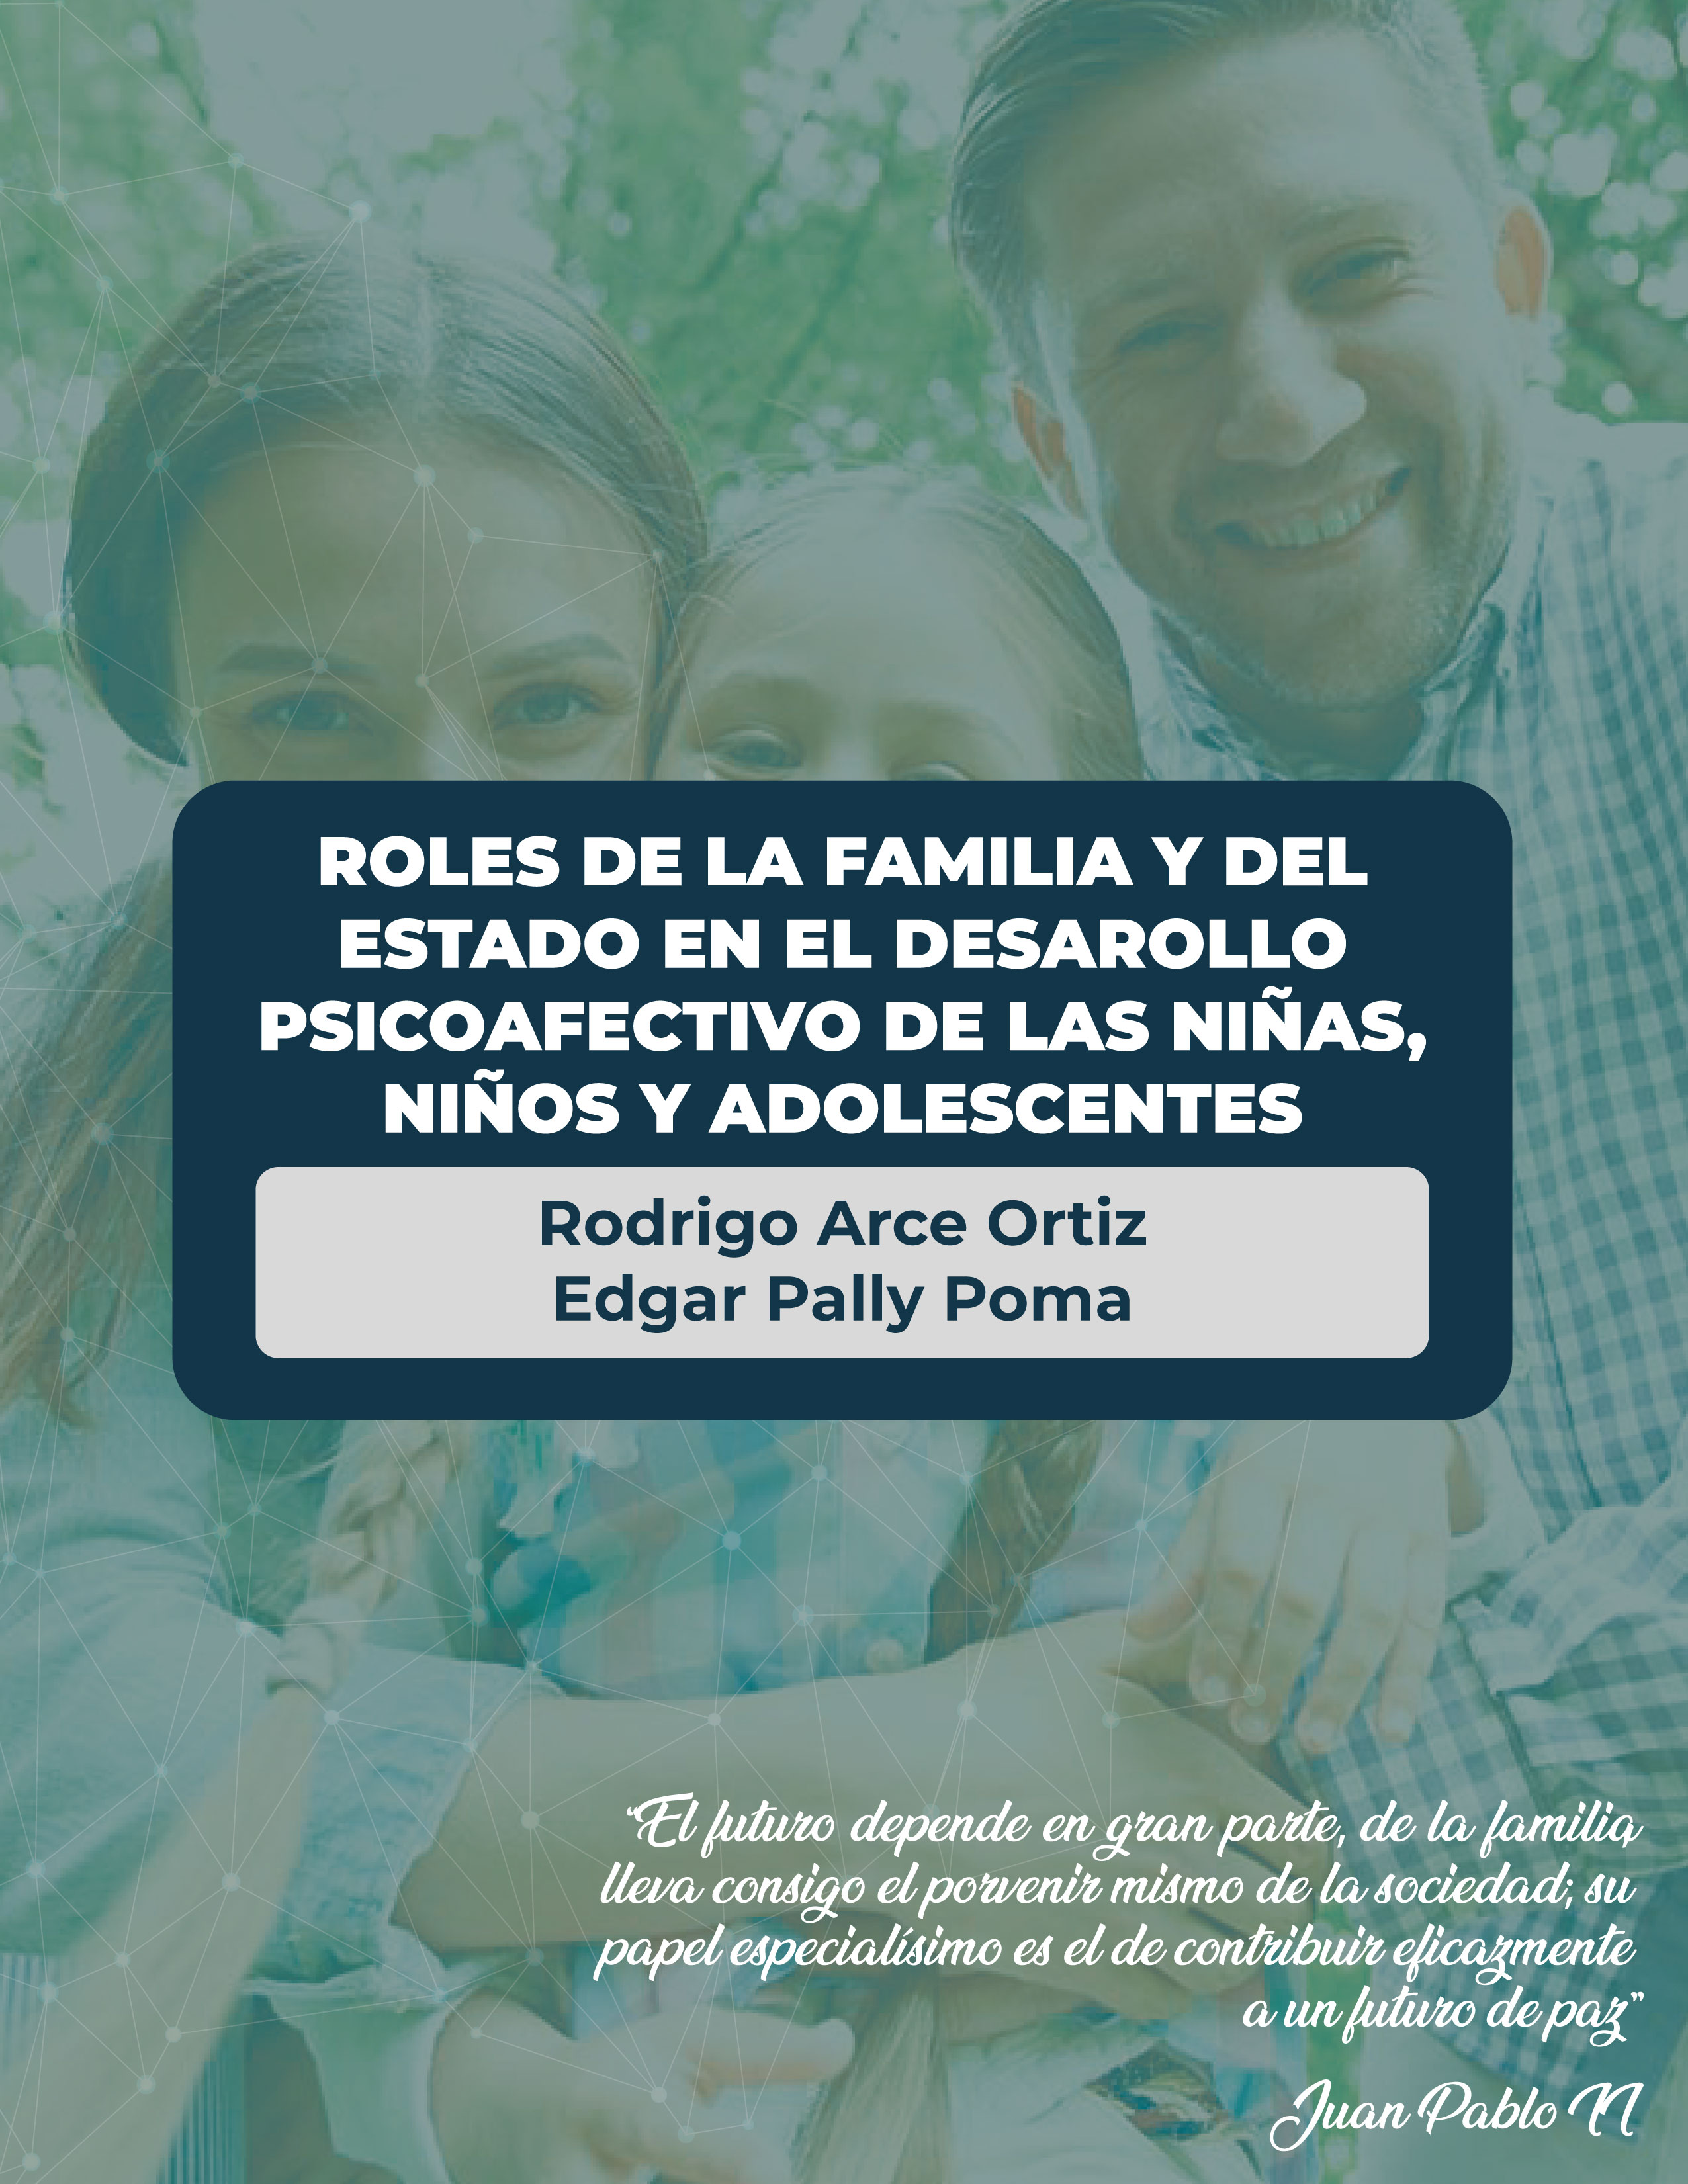 Roles de la familia y del Estado en el desarrollo psicoafectivo de niñas, niños y adolescentes